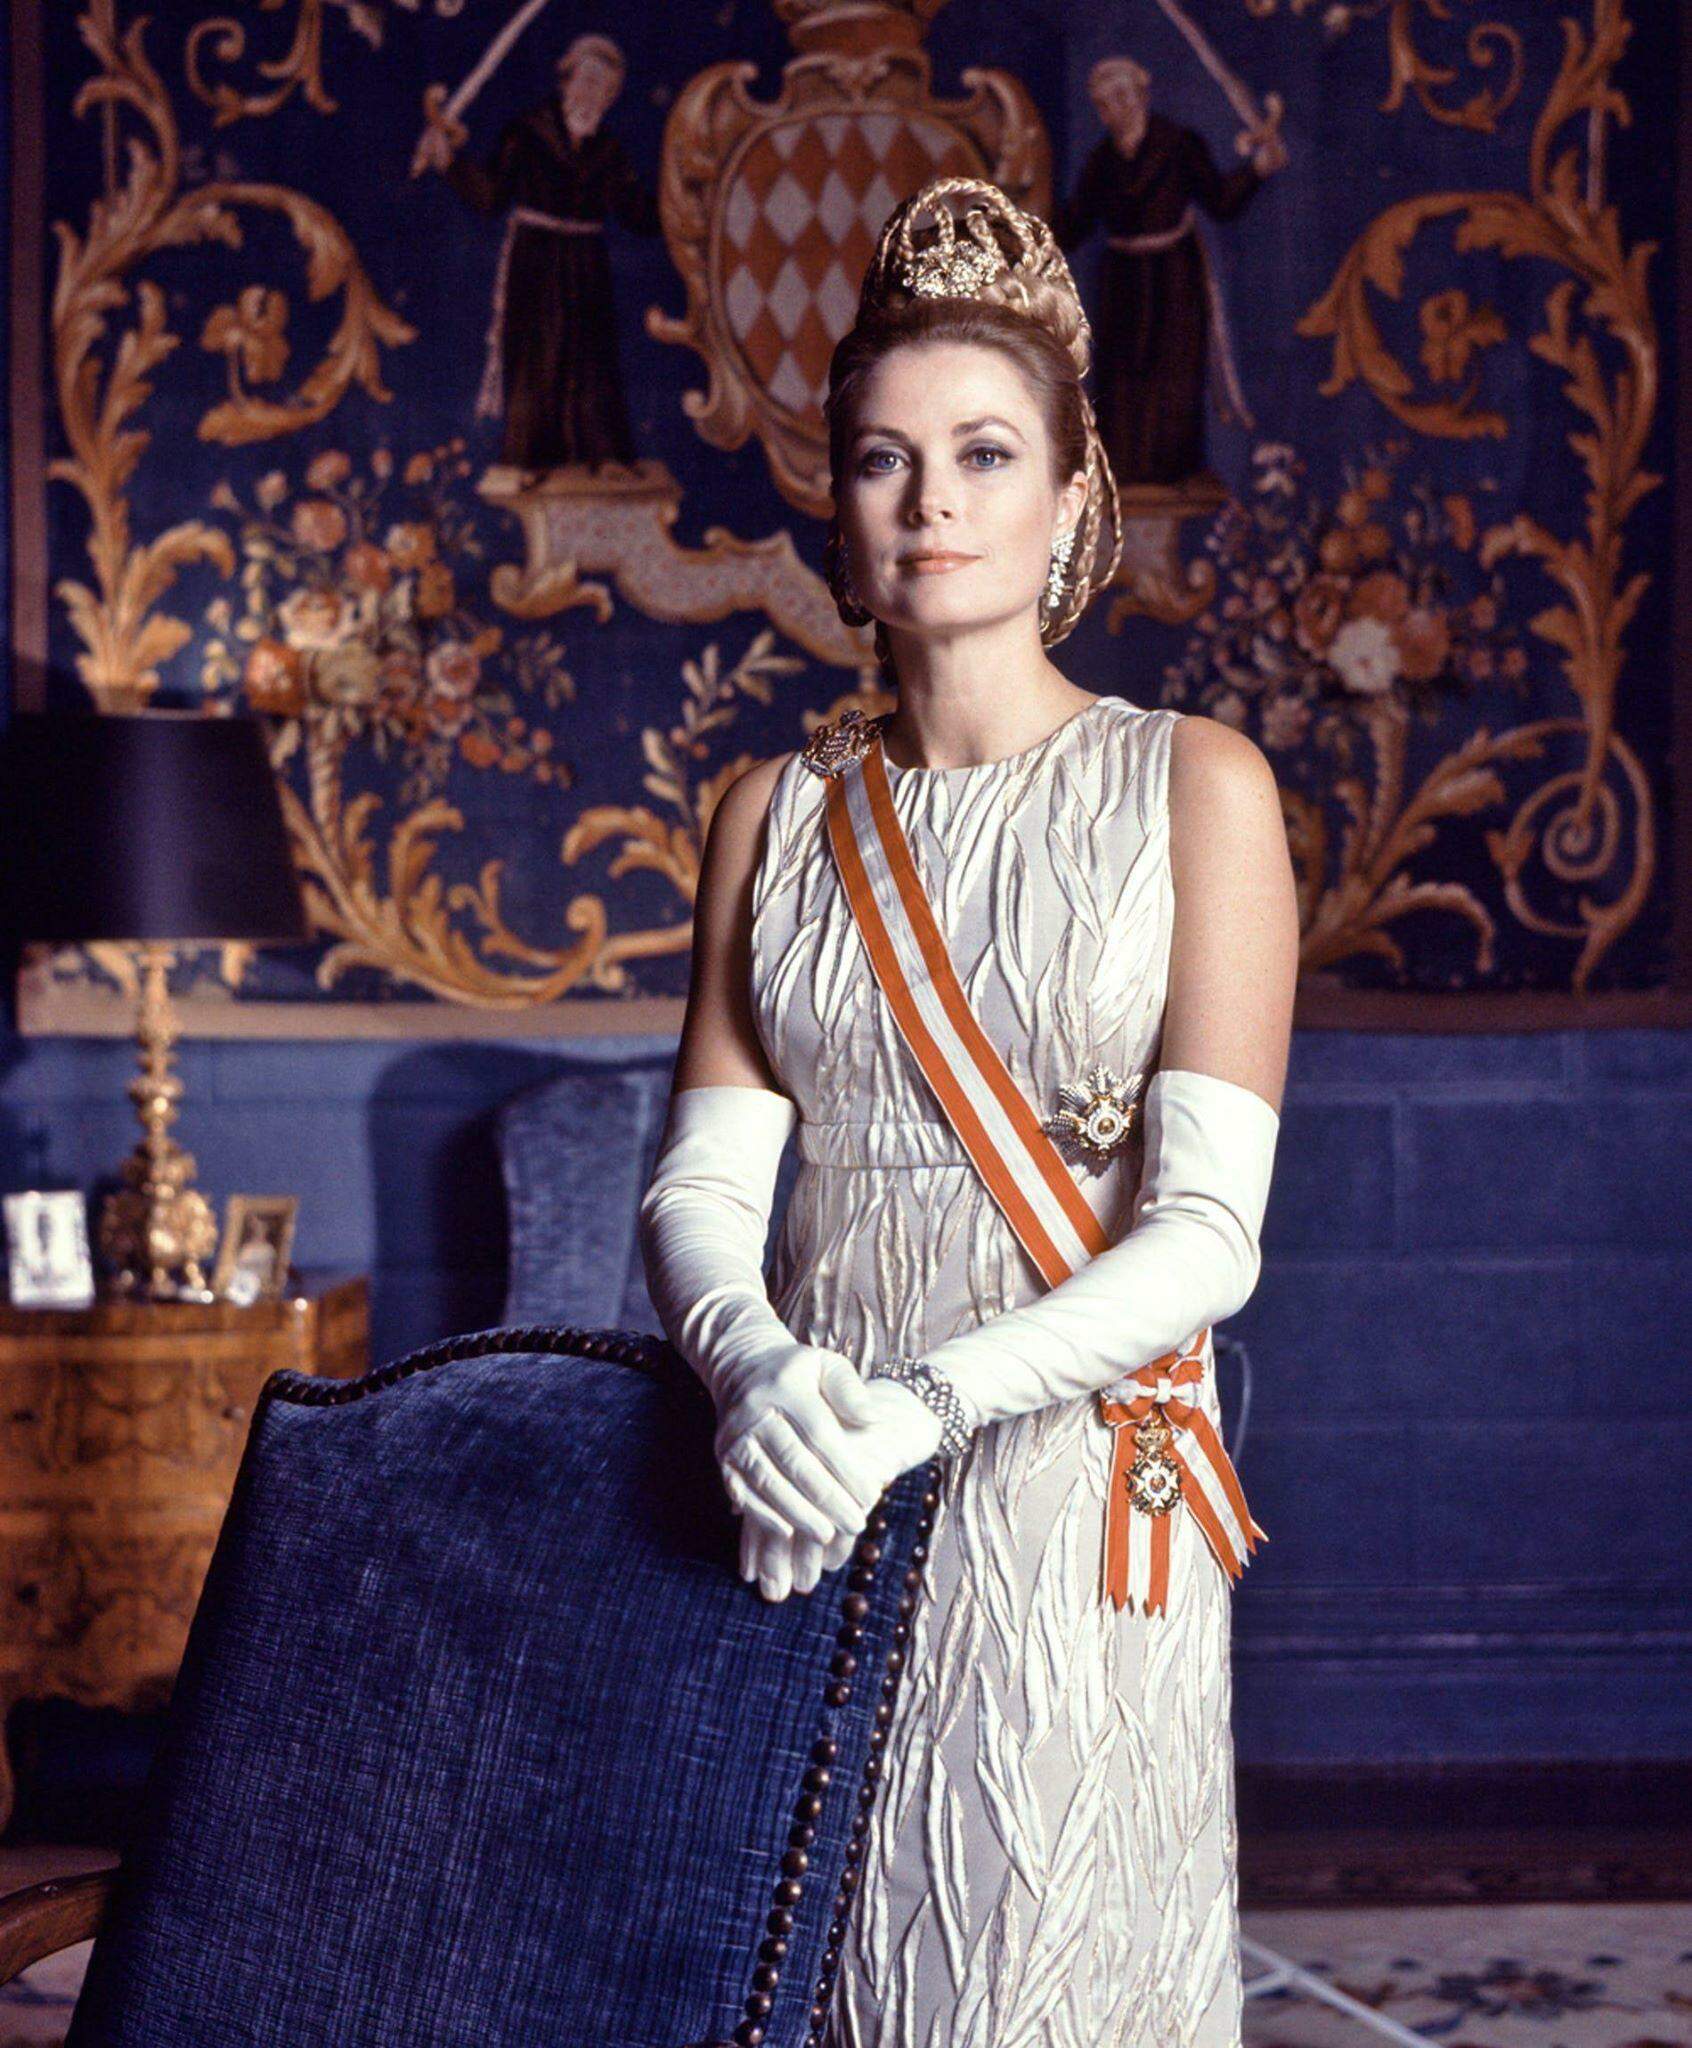 O Guarda-roupa de Grace Kelly será exposto no Museu Christian Dior